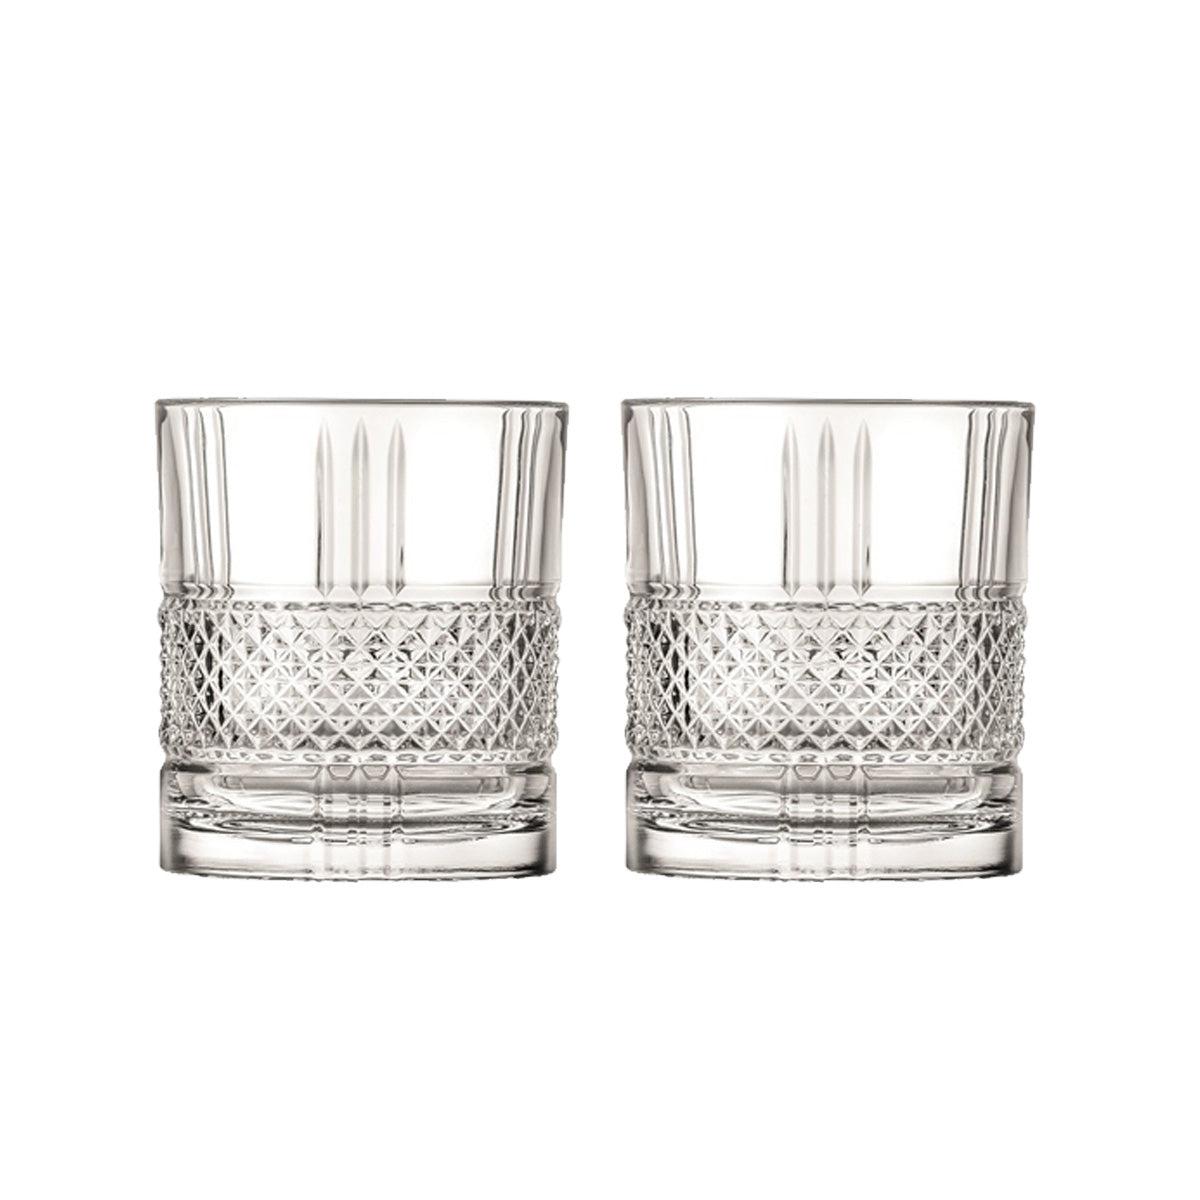 Whiskybecher Trinkglas Becher Brillante 2er Set 340ml